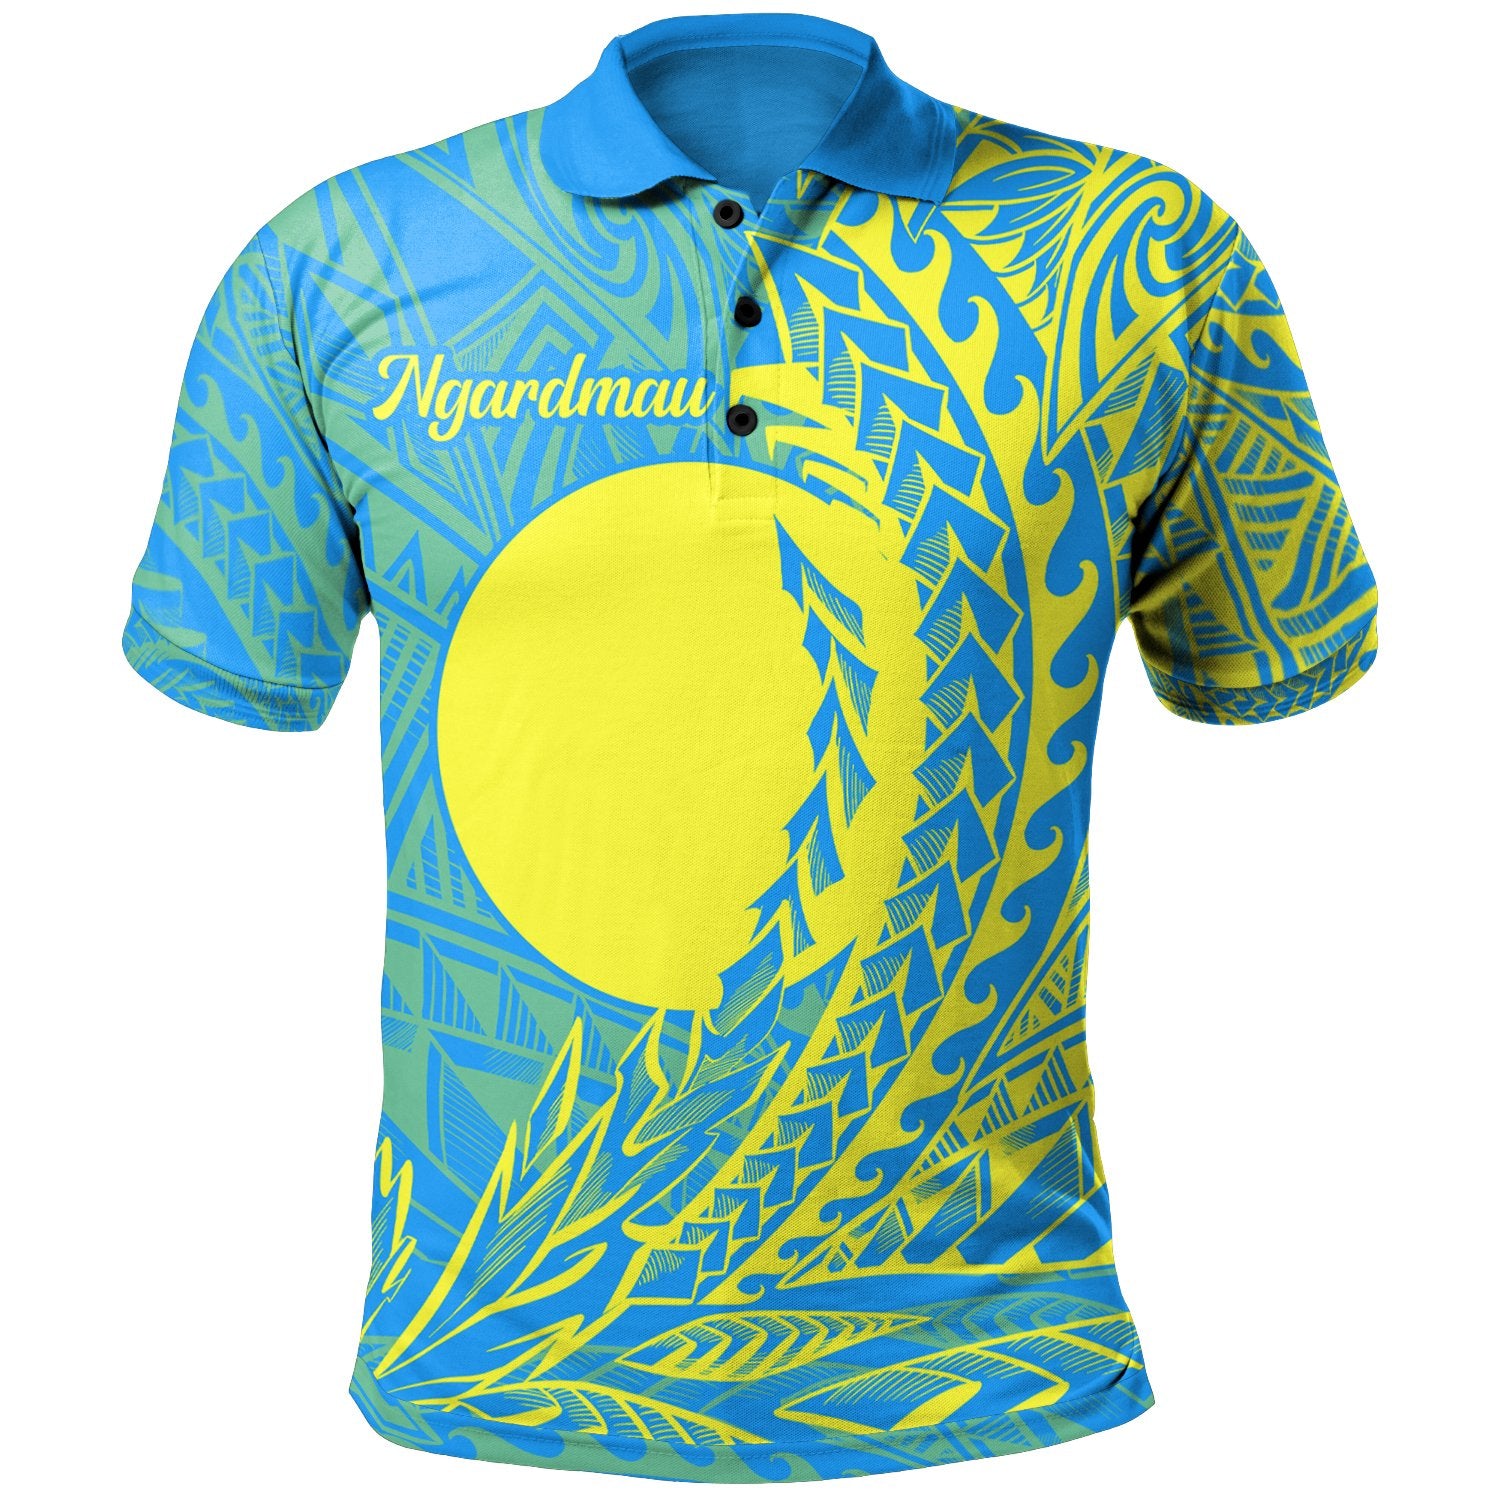 Palau Polo Shirt Ngardmau Wings Style Unisex Blue - Polynesian Pride